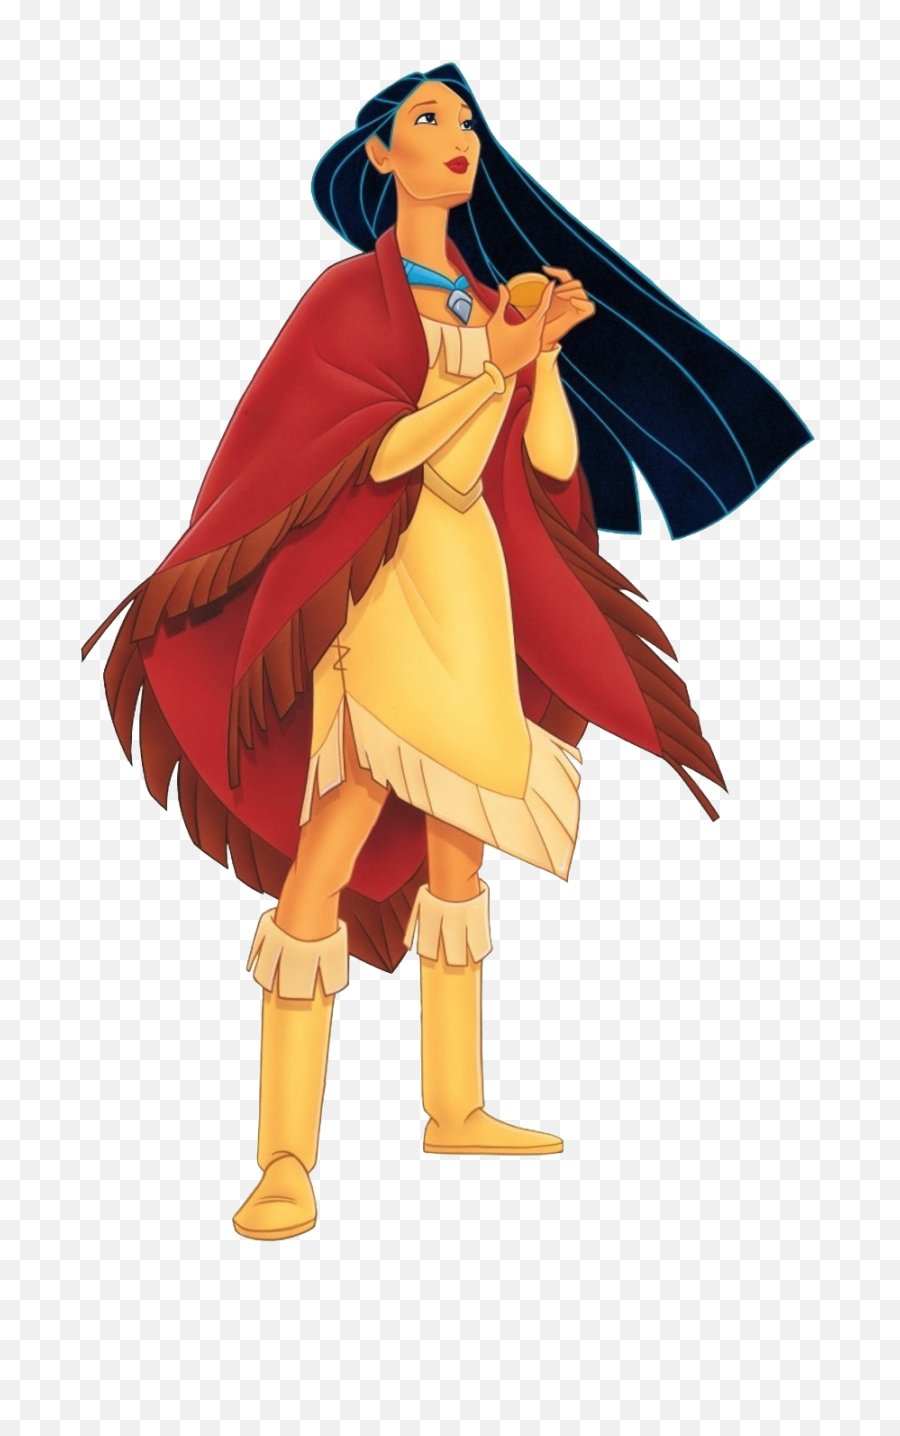 Pocahontas Disney Princess - Disney Princess Pocahontas Png,Pocahontas Png